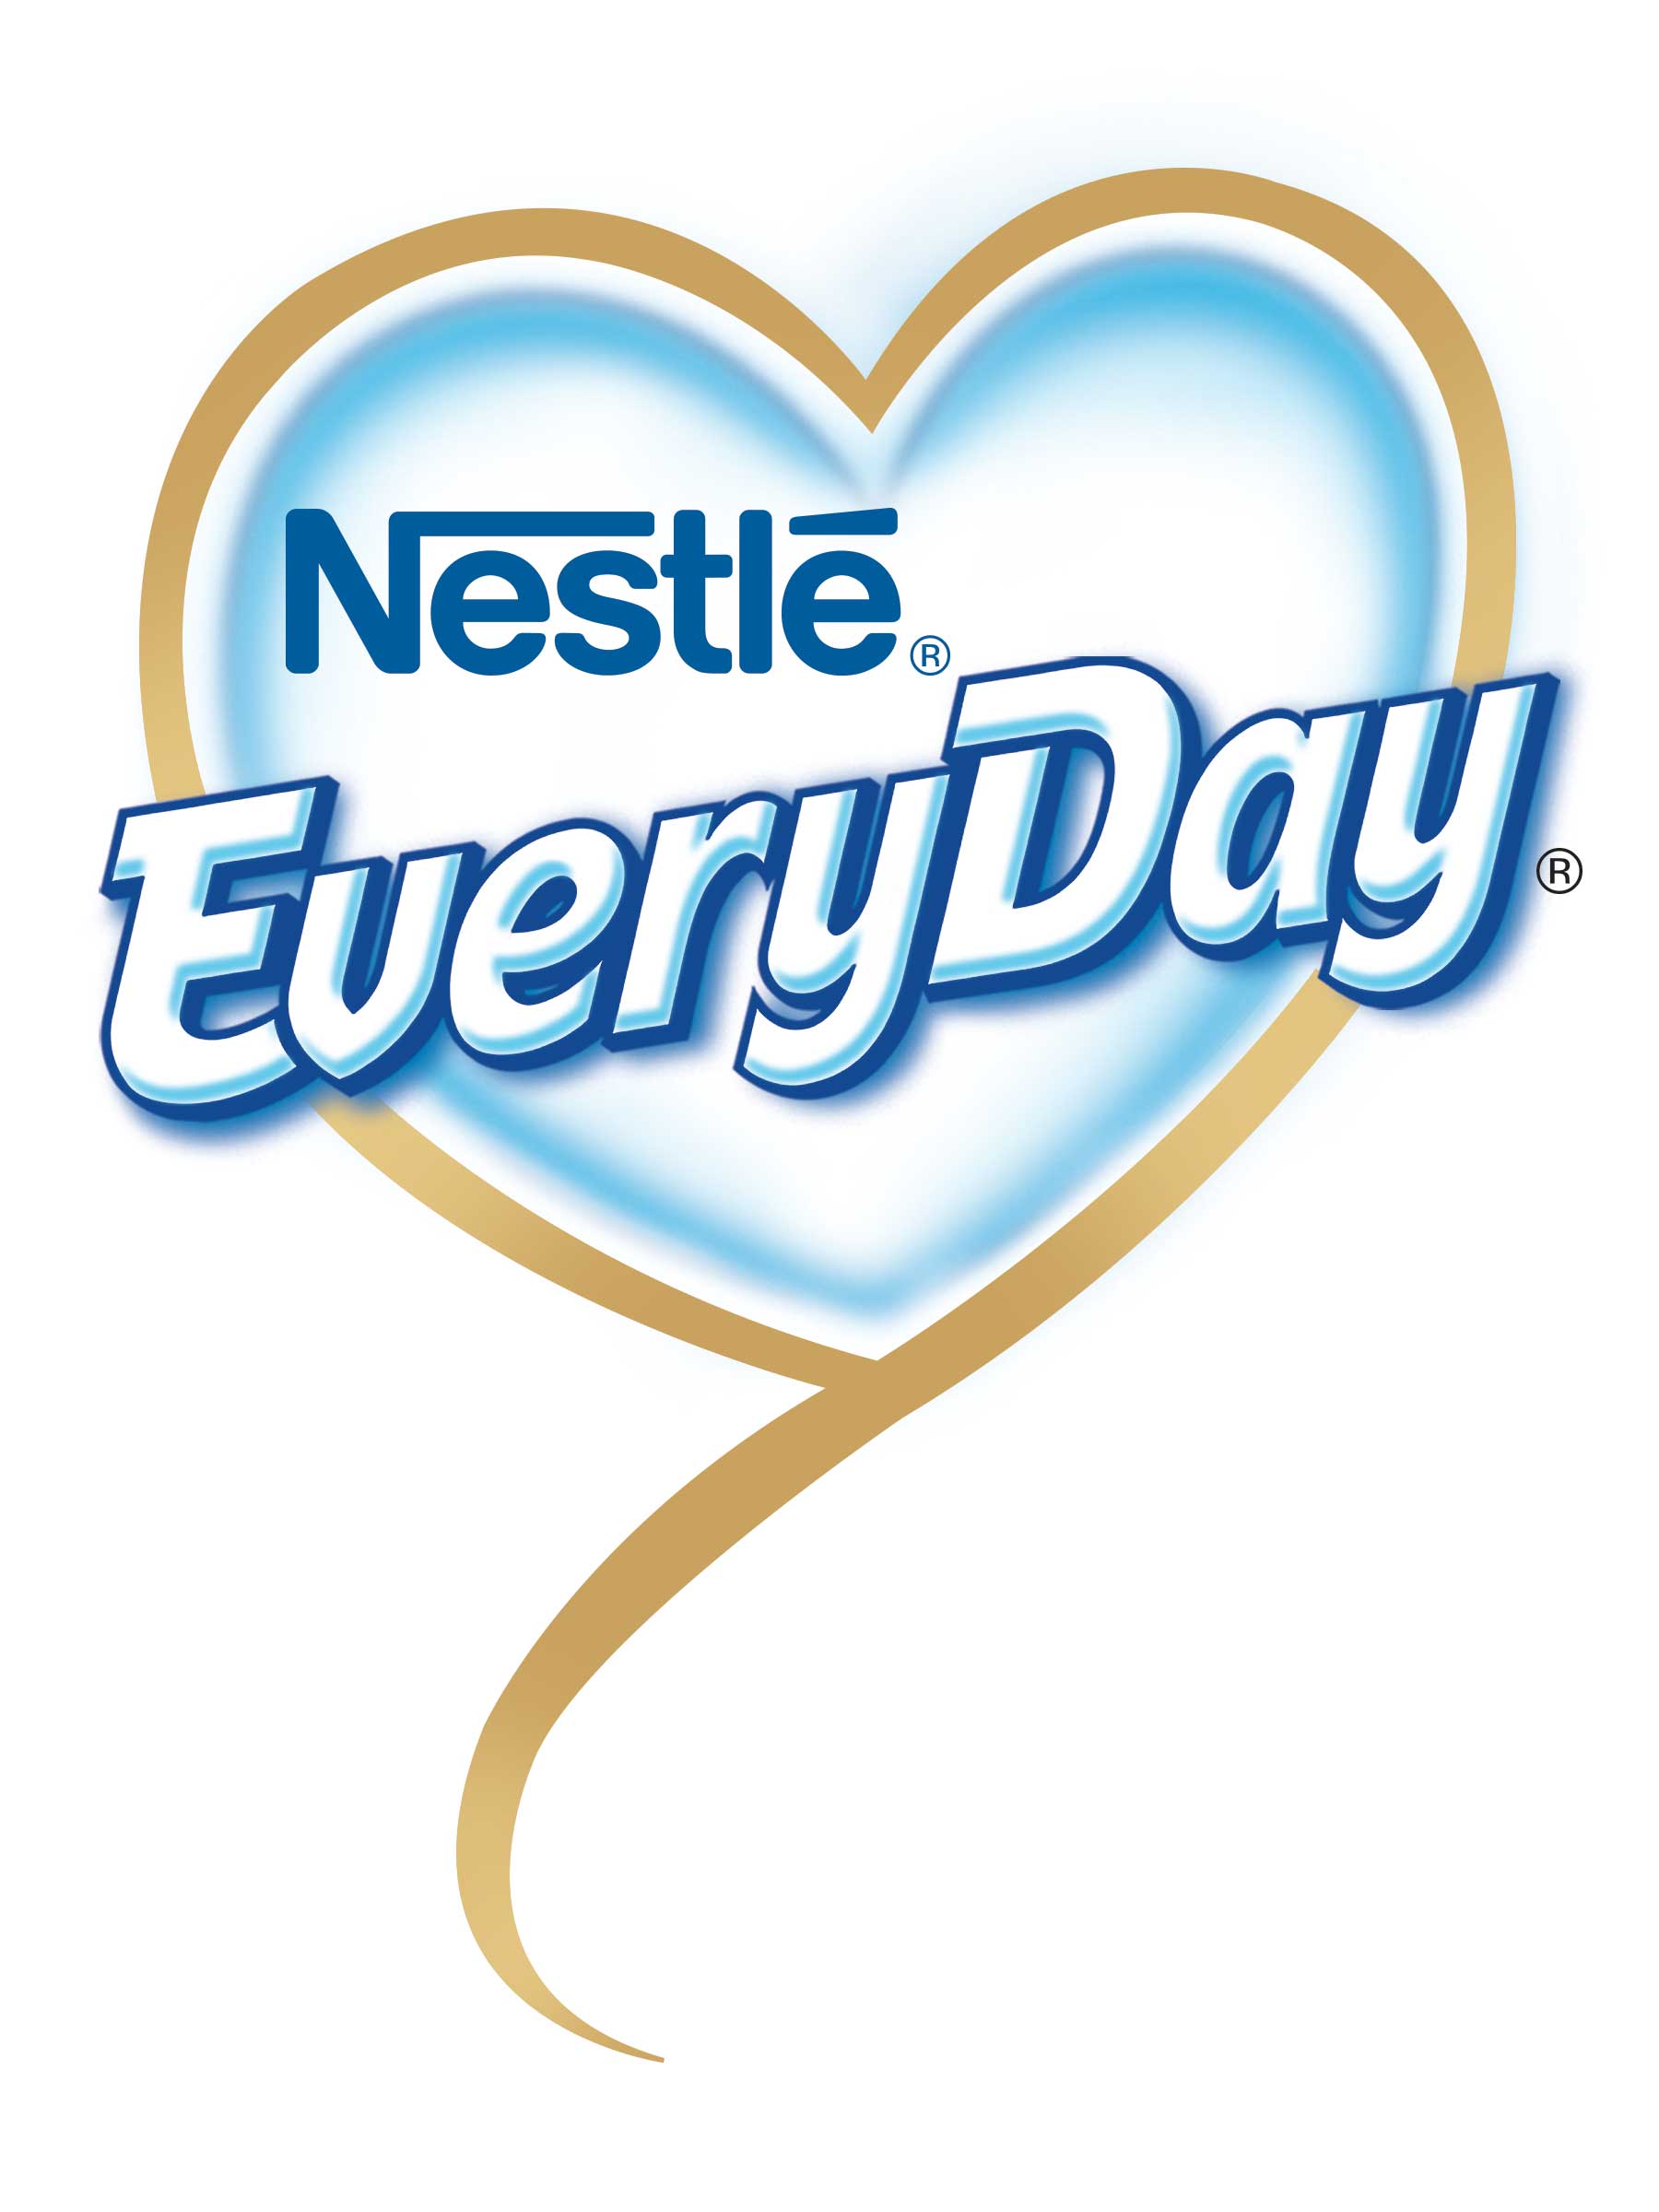 nestle everyday logo